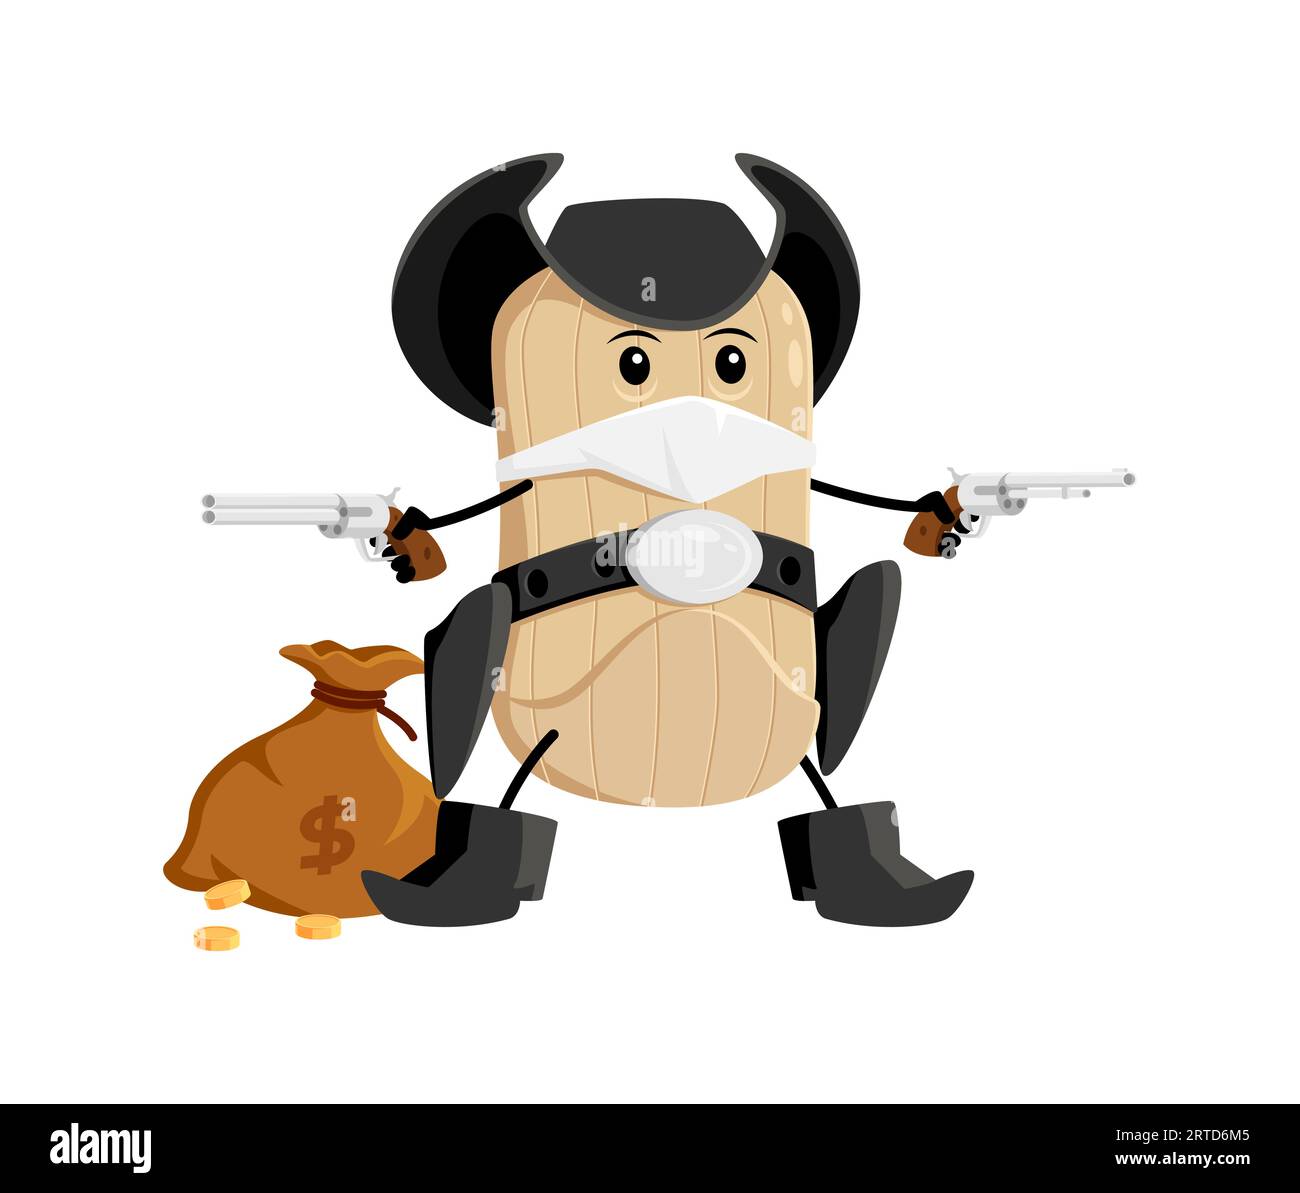 Cow-boy, bandit, voleur et ranger tex mex, personnage culinaire mexicain. Vecteur isolé reiver avec face cachée arborant un pistolet, prêt à defe Illustration de Vecteur